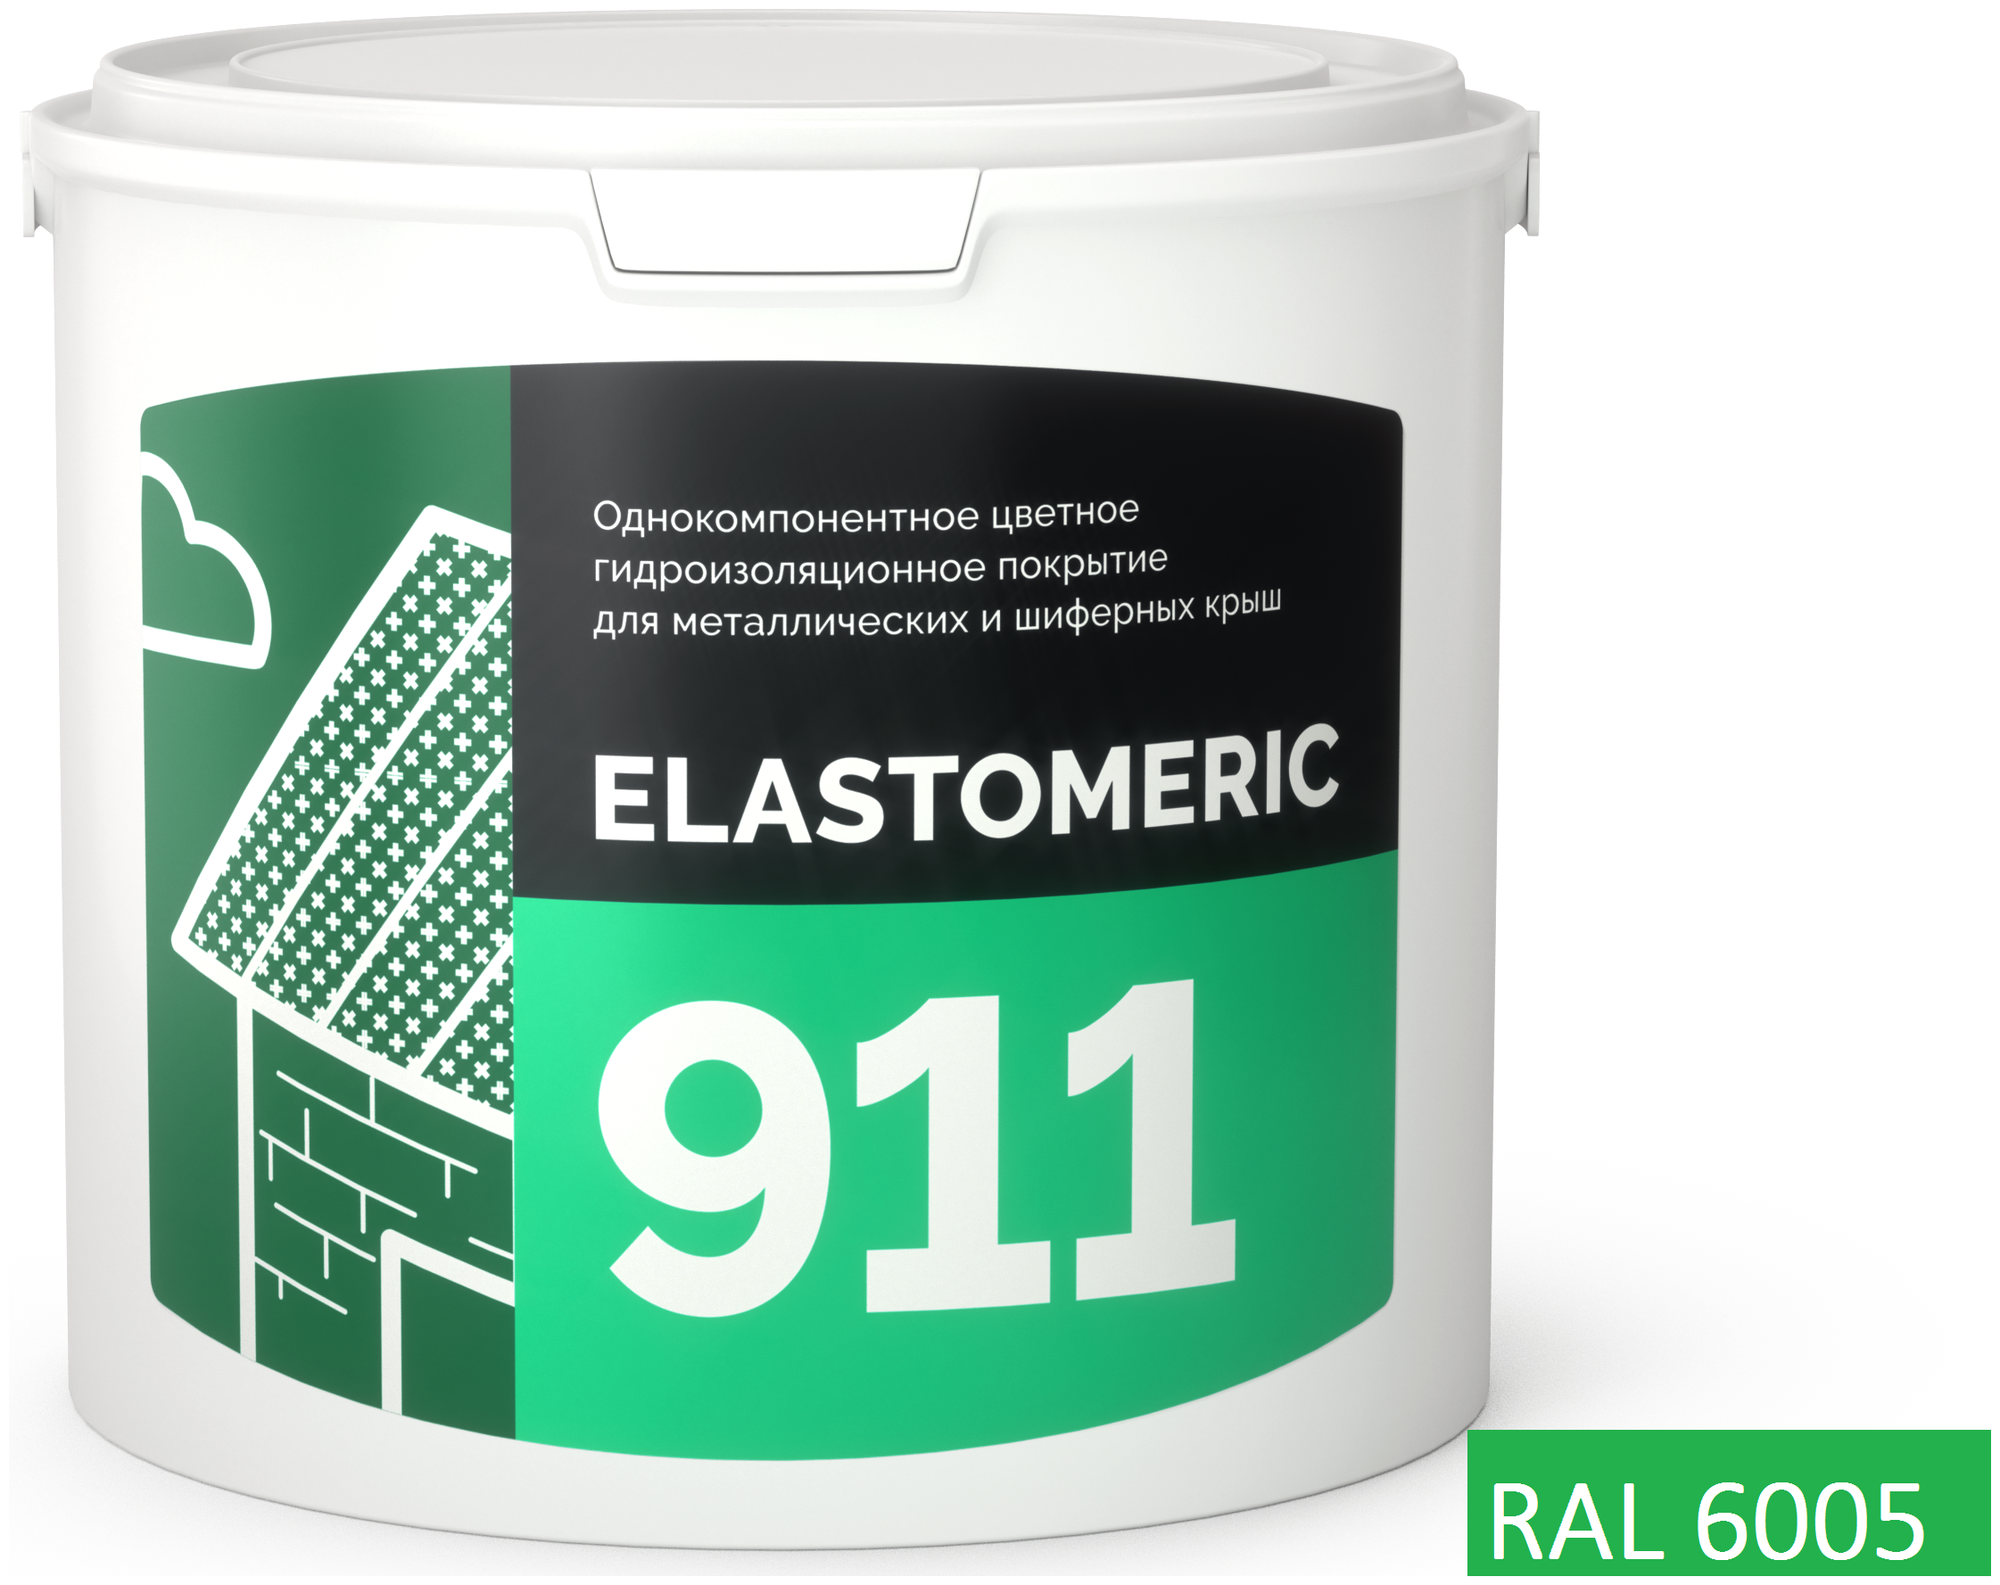 Покрытие для гидроизоляции и окраски металлических крыш Elastomeric 911 (3кг.), зеленый мох - фотография № 1